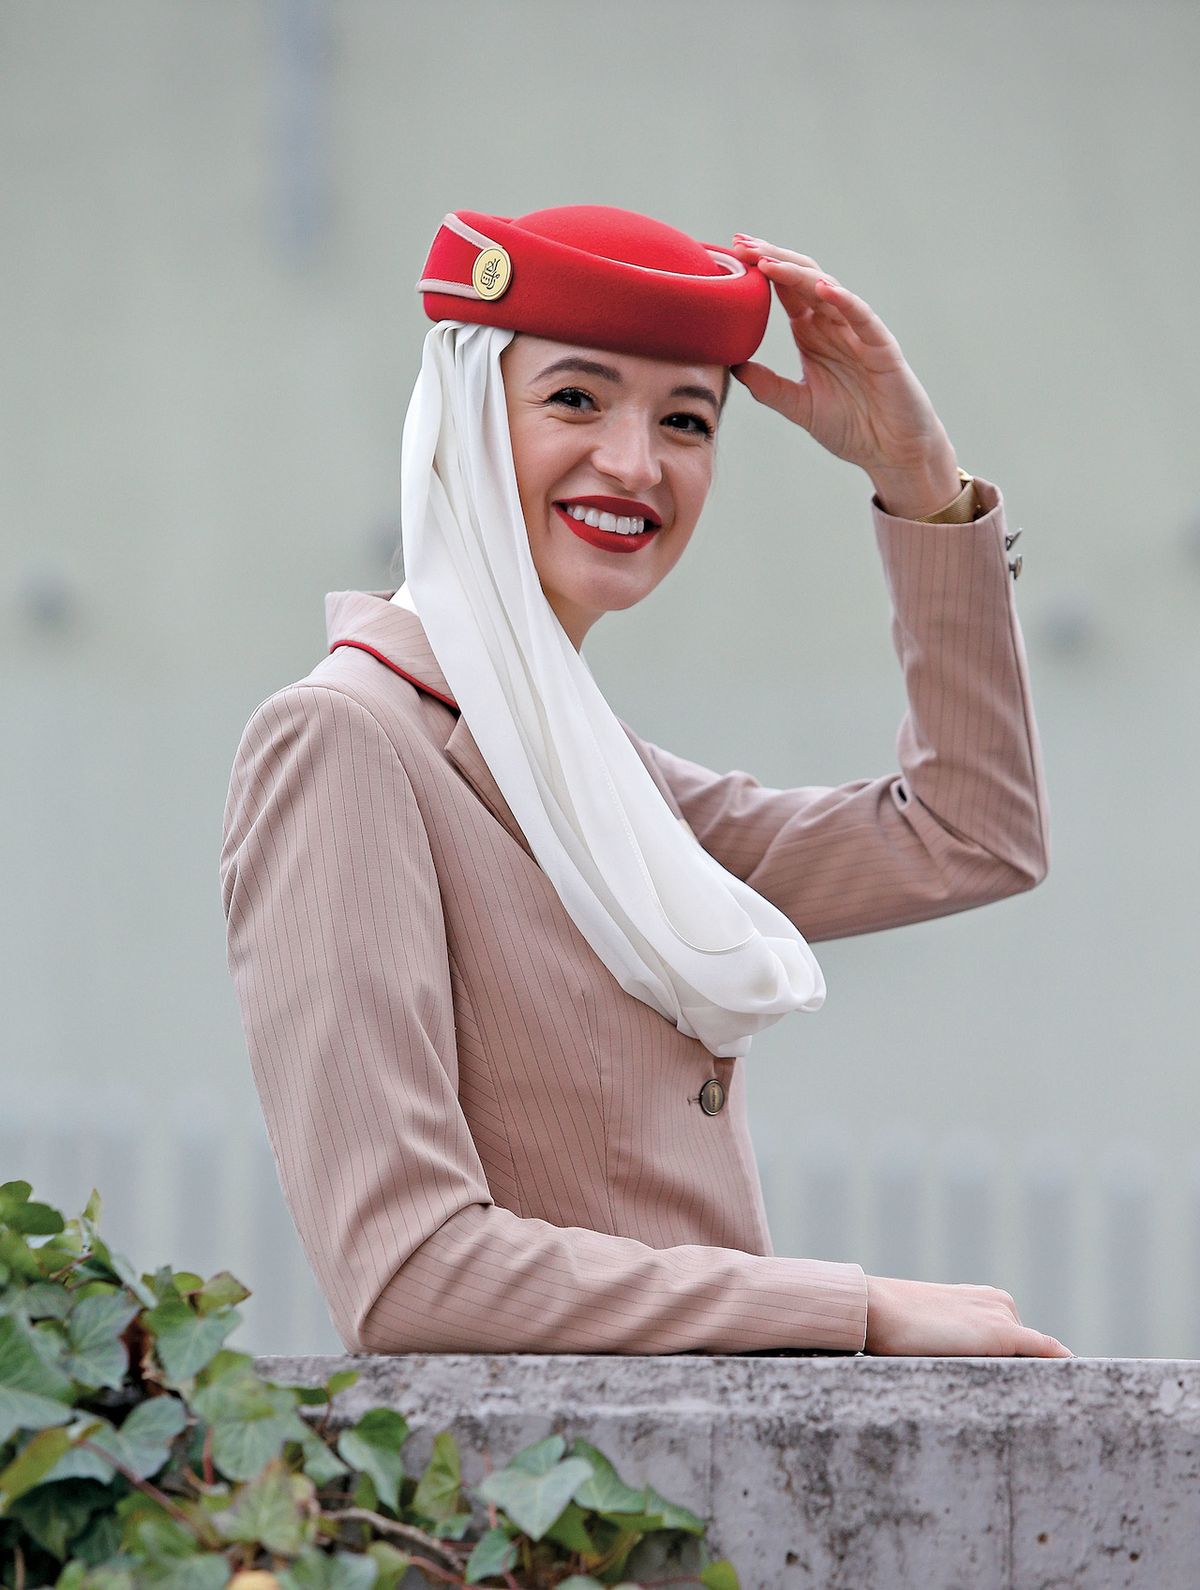 Jana Kůtová hrdě obléká béžovou uniformu Emirates s bílým šátkem, typickým rudým kloboučkem a stejně barevnou kabelkou. „Rudá rtěnka je také součástí uniformy, ale odstín si vybíráme samy.“